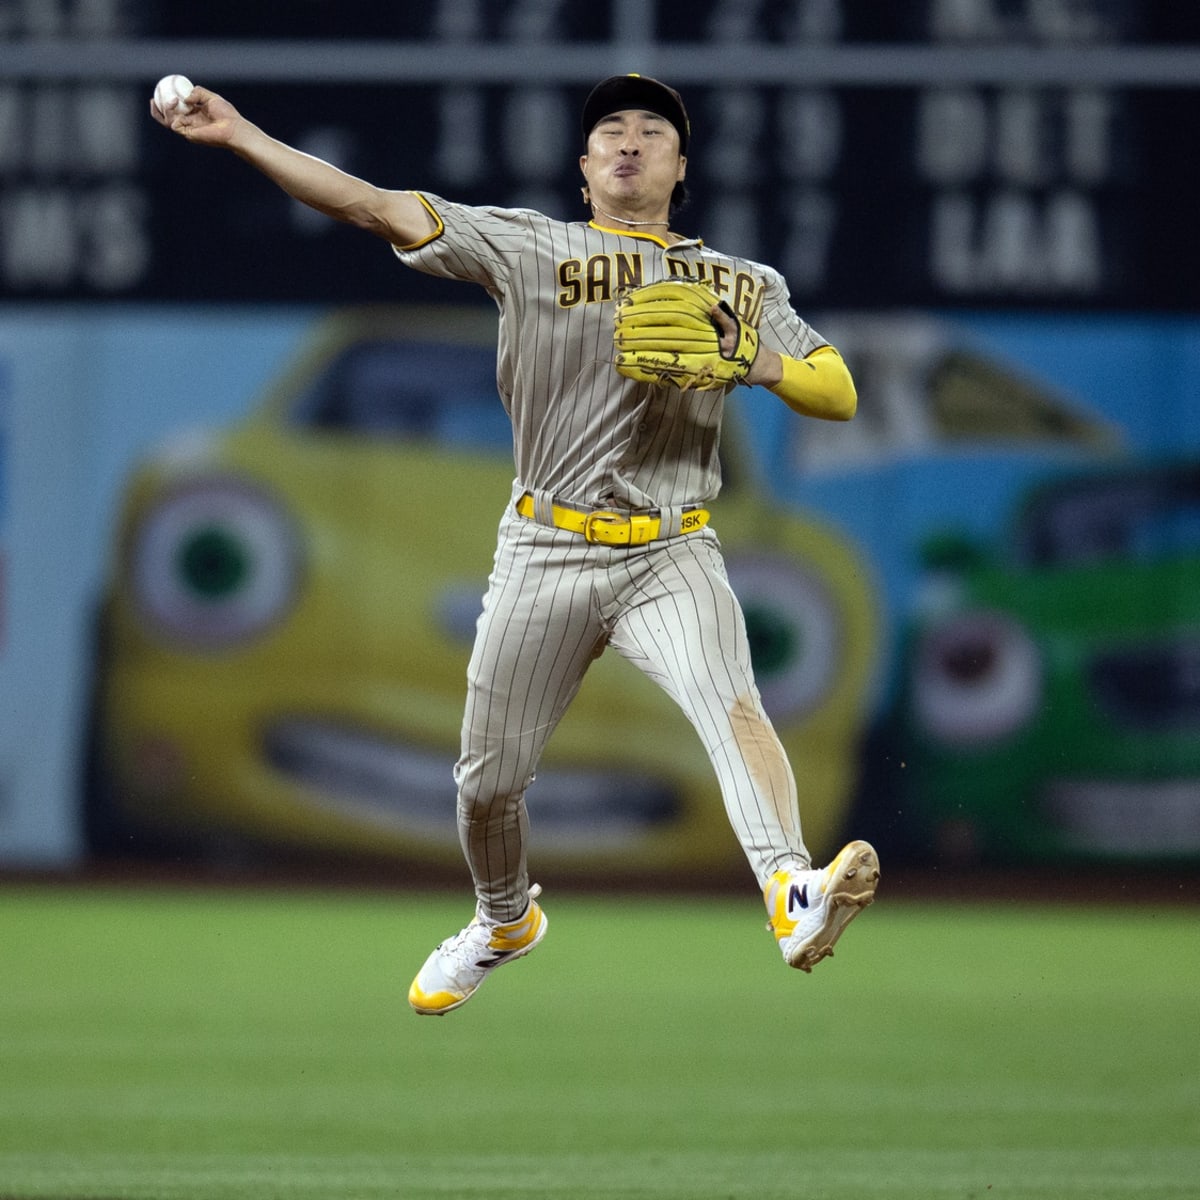 Padres' Kim Ha-seong looking forward to 'fun' matchup vs. S. Korean pitcher